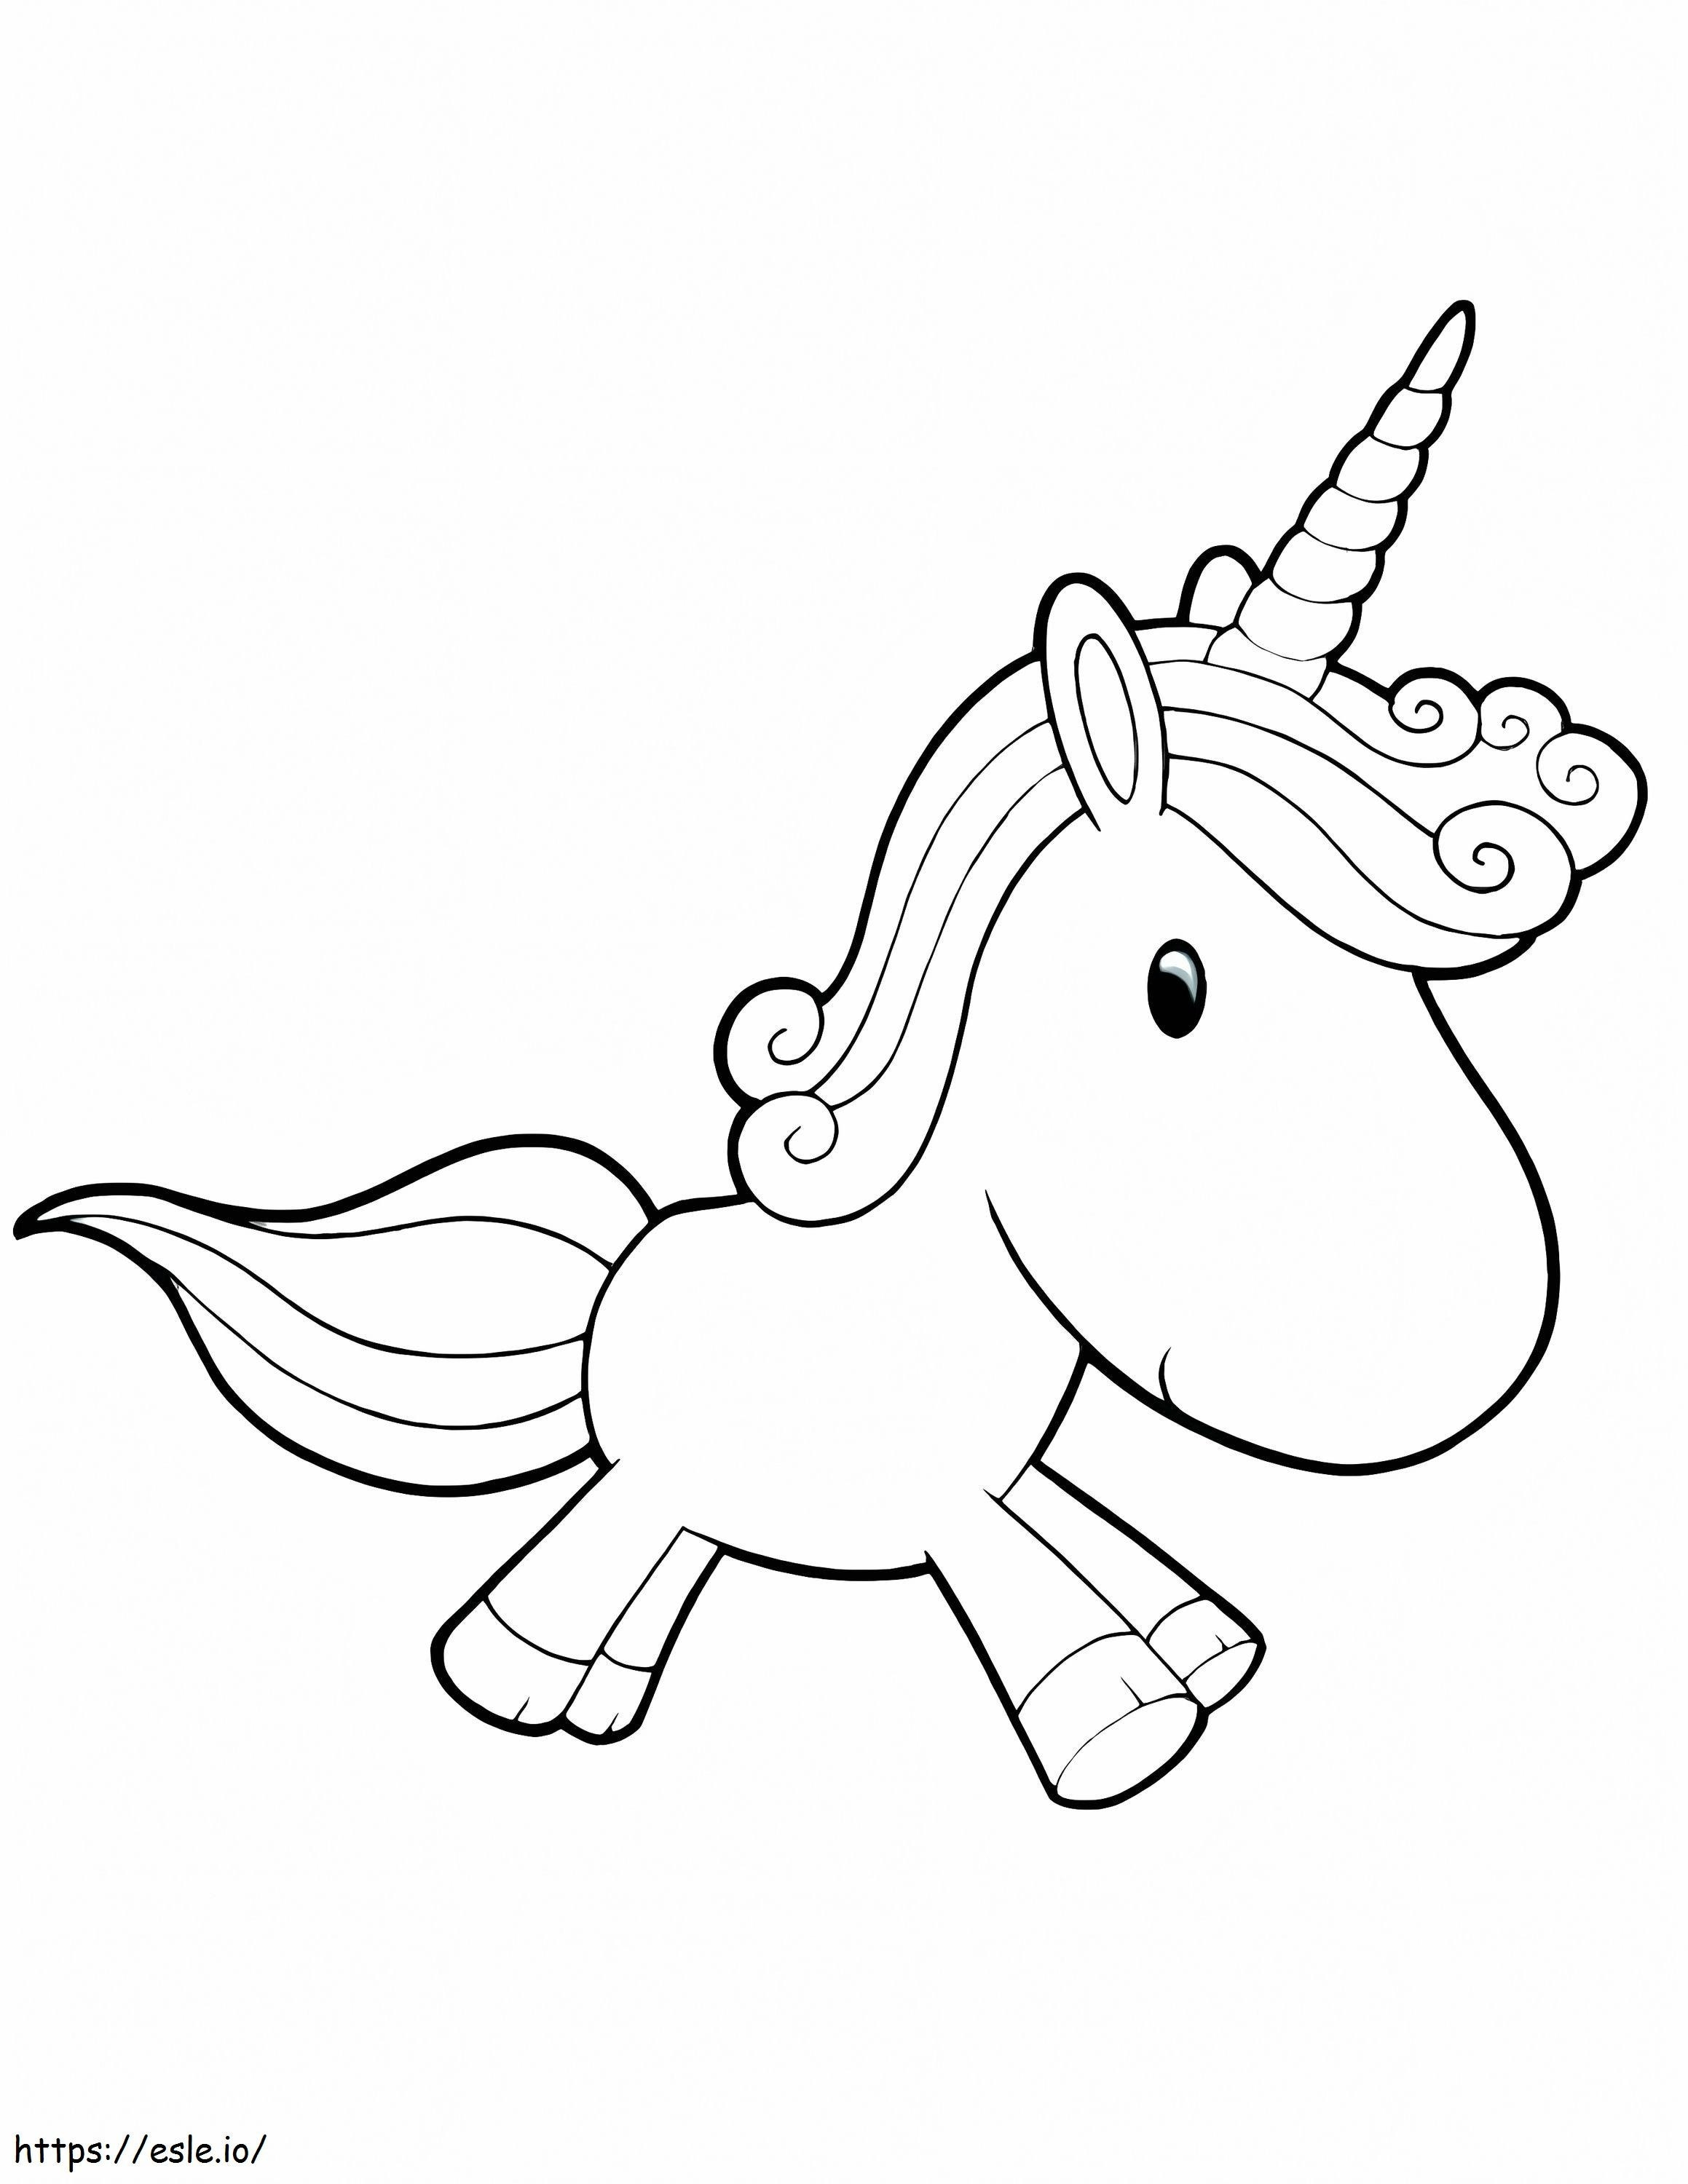 1545874143 Unicorn Lucu Unicorn Lucu Unicorn Lucu Peri Unicorn Mewarnai Unicorn Gratis Cetak Unicorn Lucu Gambar Mewarnai